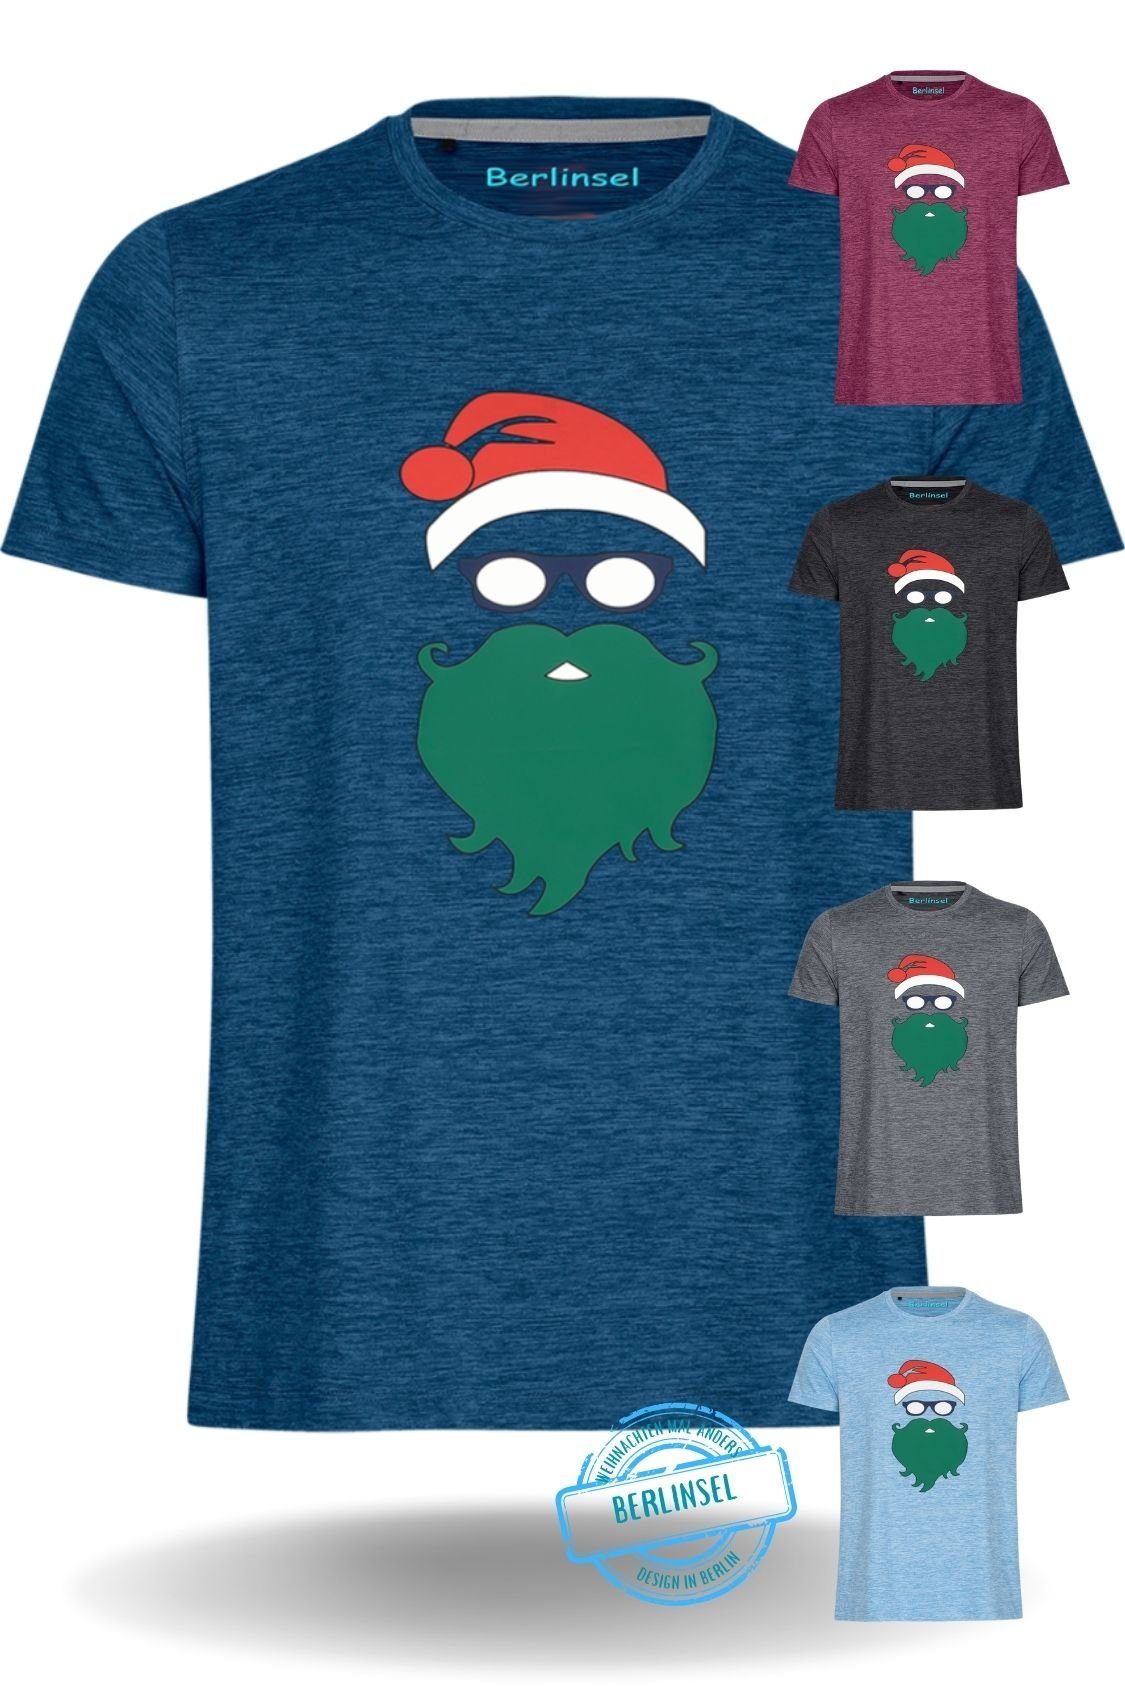 Berlinsel T-Shirt Weihnachtsfeier, Weihnachtsfoto blau Weihnachtsoutfit Printshirt Herren Weihnachtsgeschenk, Männer Weihnachtsshirt